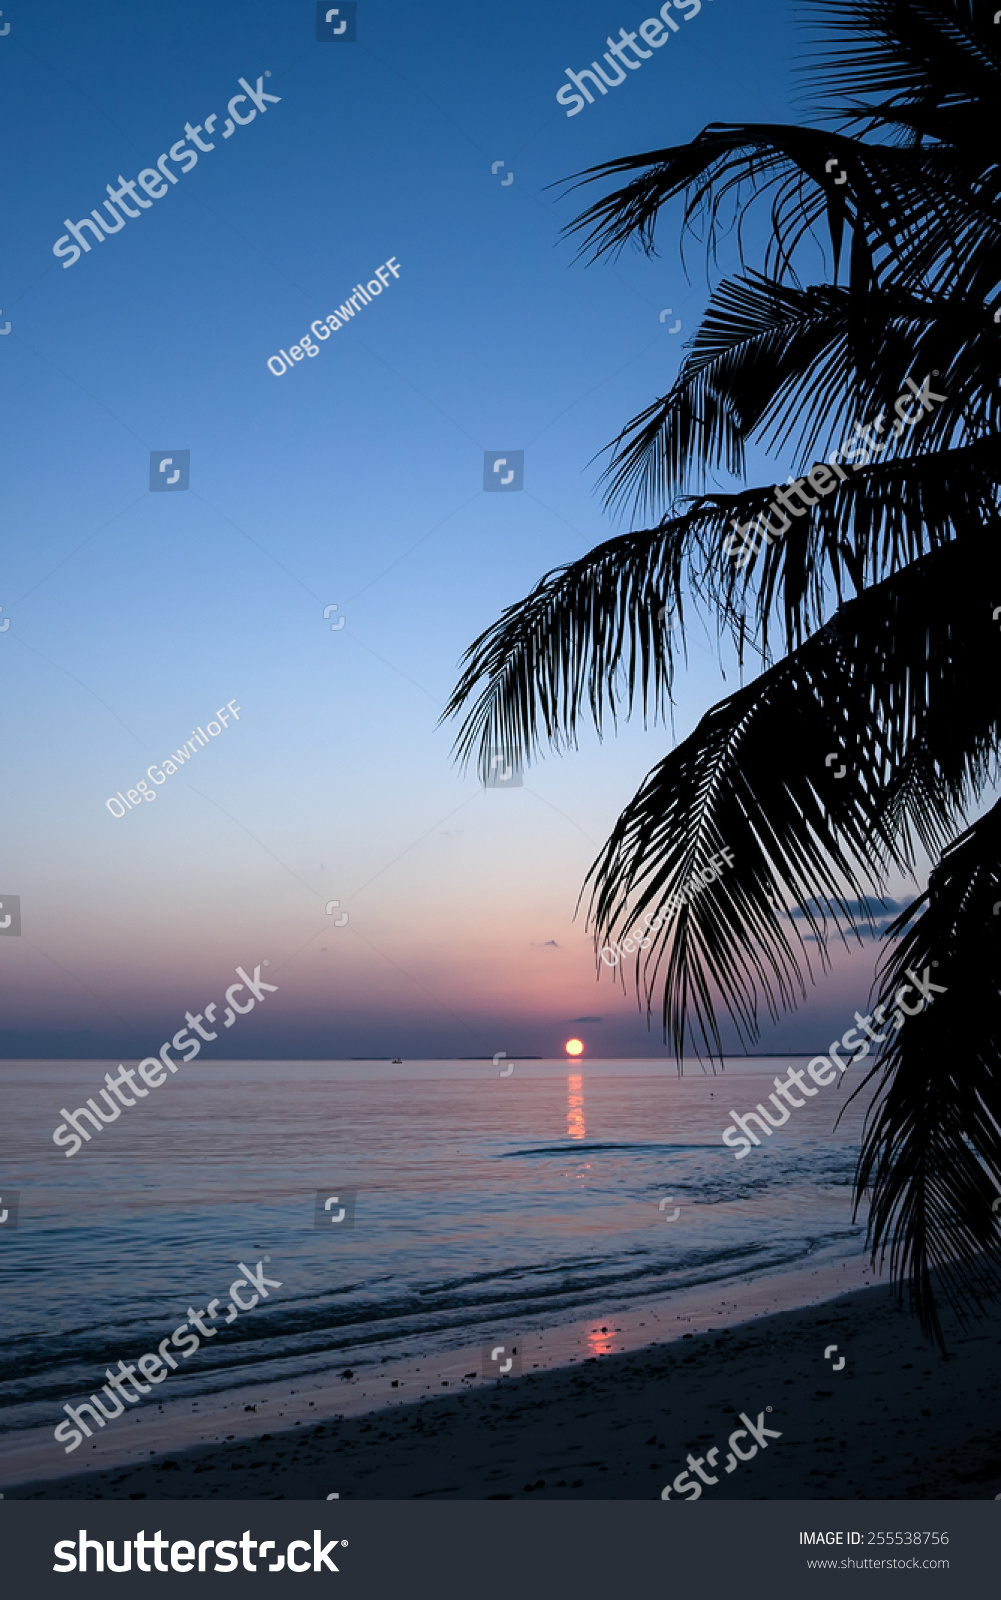 Sunset On The Beach Of Sea Stock Photo 255538756 : Shutterstock